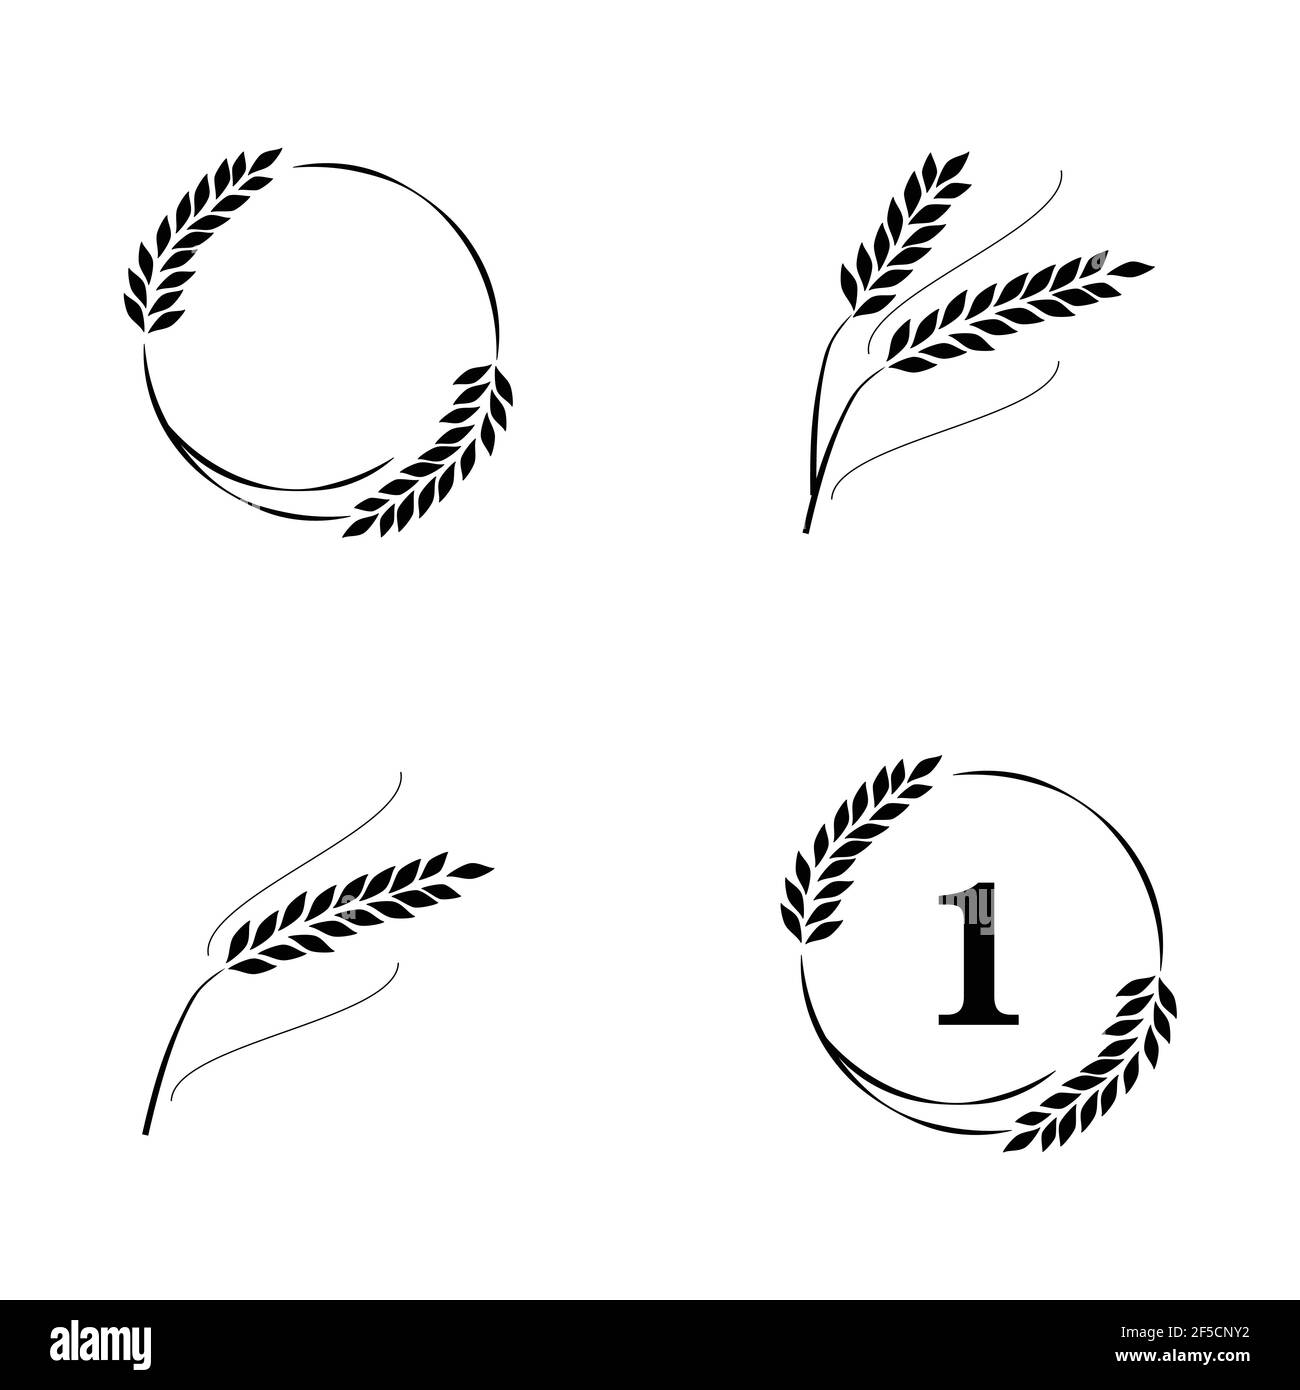 Symbole für Logo Design Weizen. Landwirtschaft, Mais, Gerste, Stiele, organische Pflanzen, Brot, Lebensmittel natürliche Ernte Stock Vektor